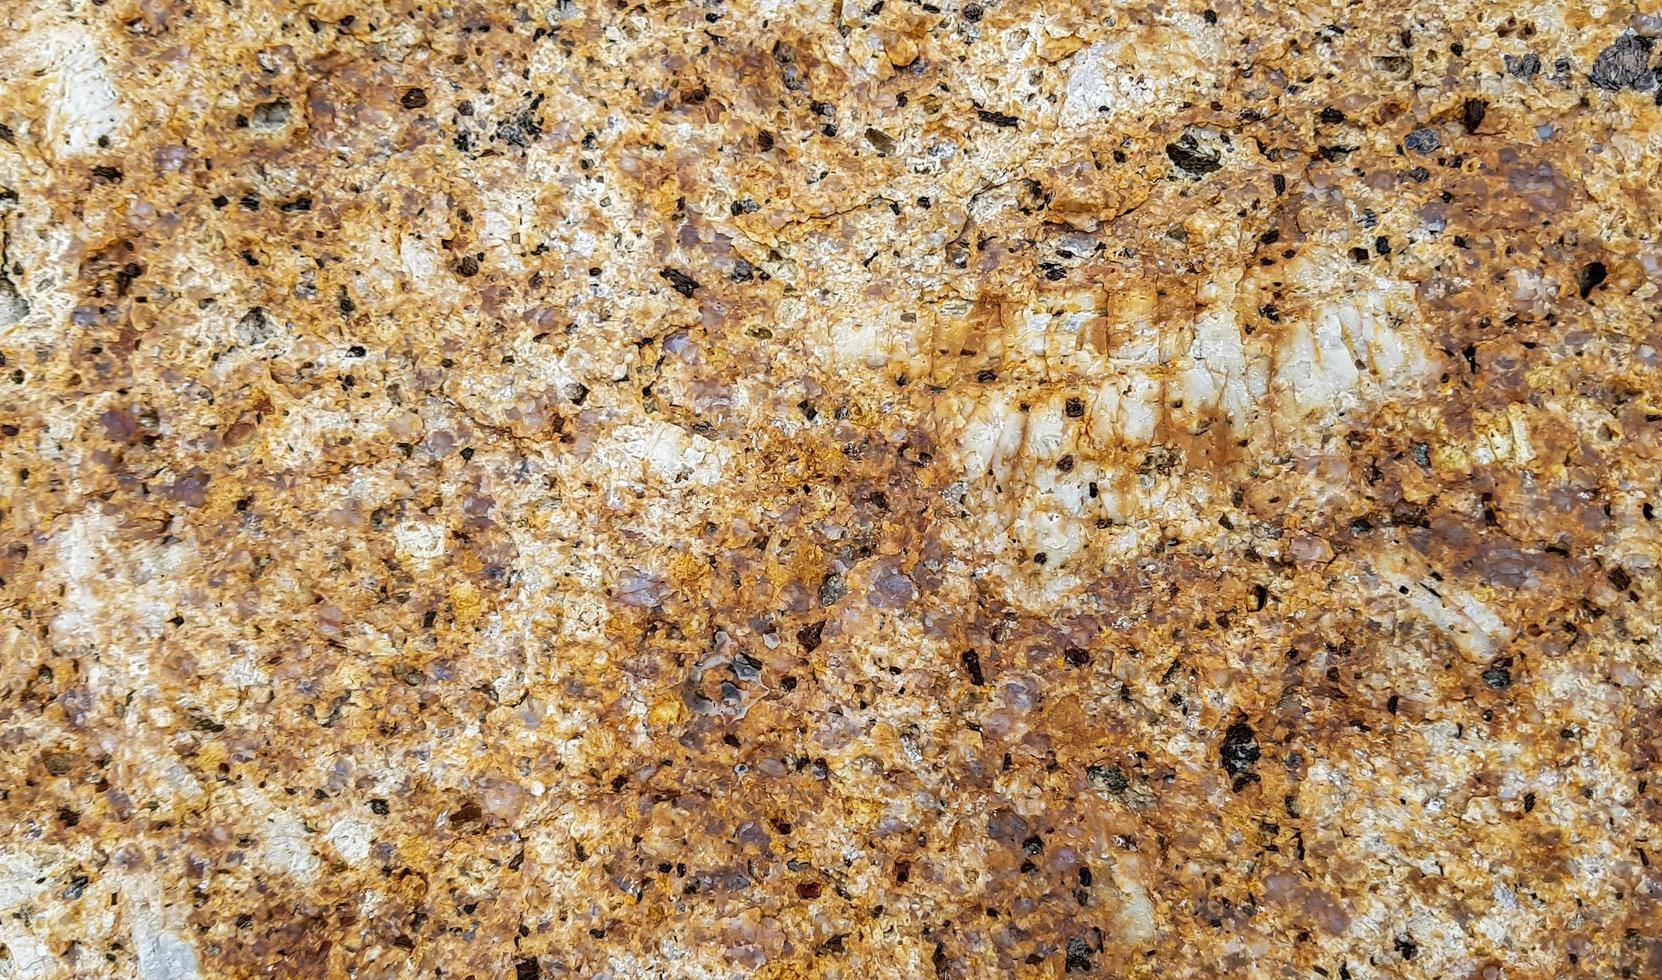 superficie de la piedra. textura de piedra con patrón natural de fondo. foto